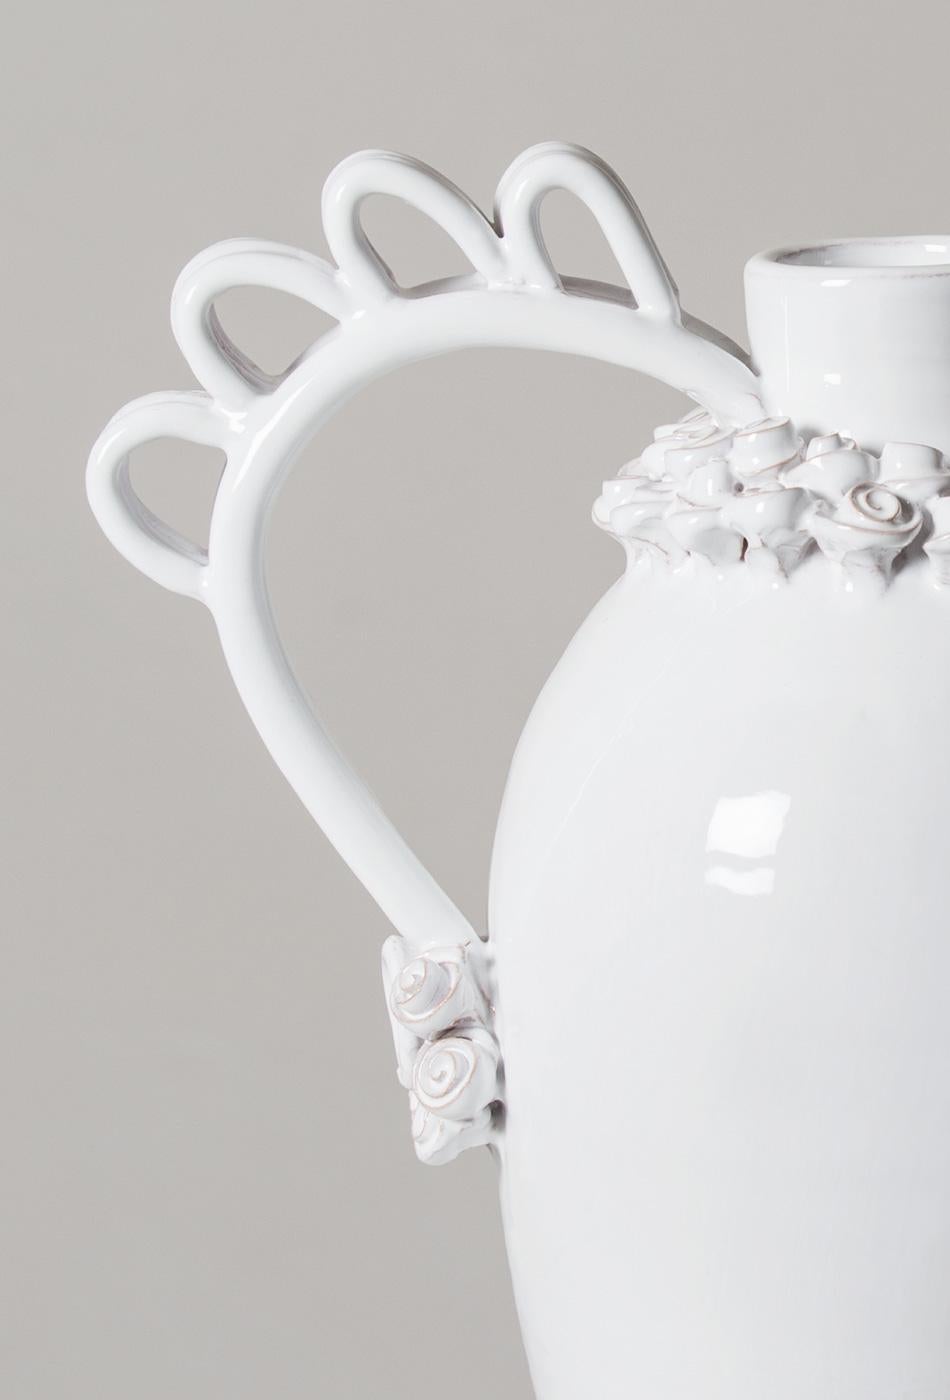 Contemporary Marria, a Reinterpretation of the Sardinian Nuptial Vase by Valentina Cameranesi For Sale